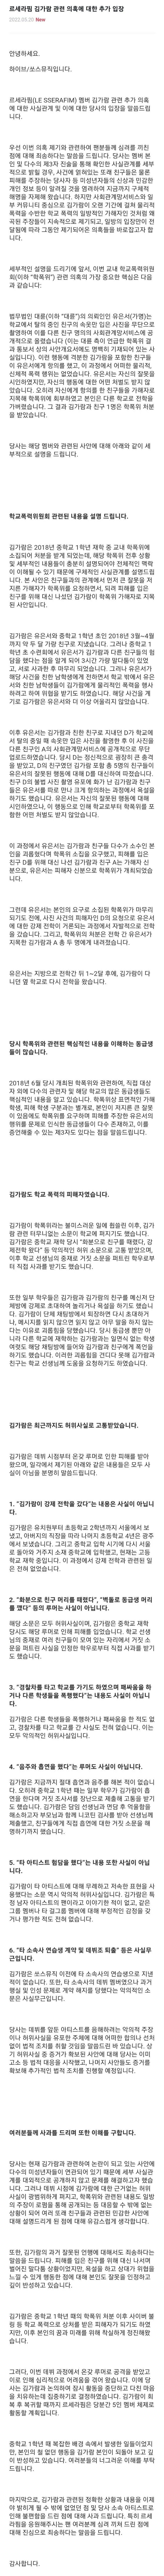 르세라핌 김가람 학교폭력 관련 의혹에 소속사의 추가입장...